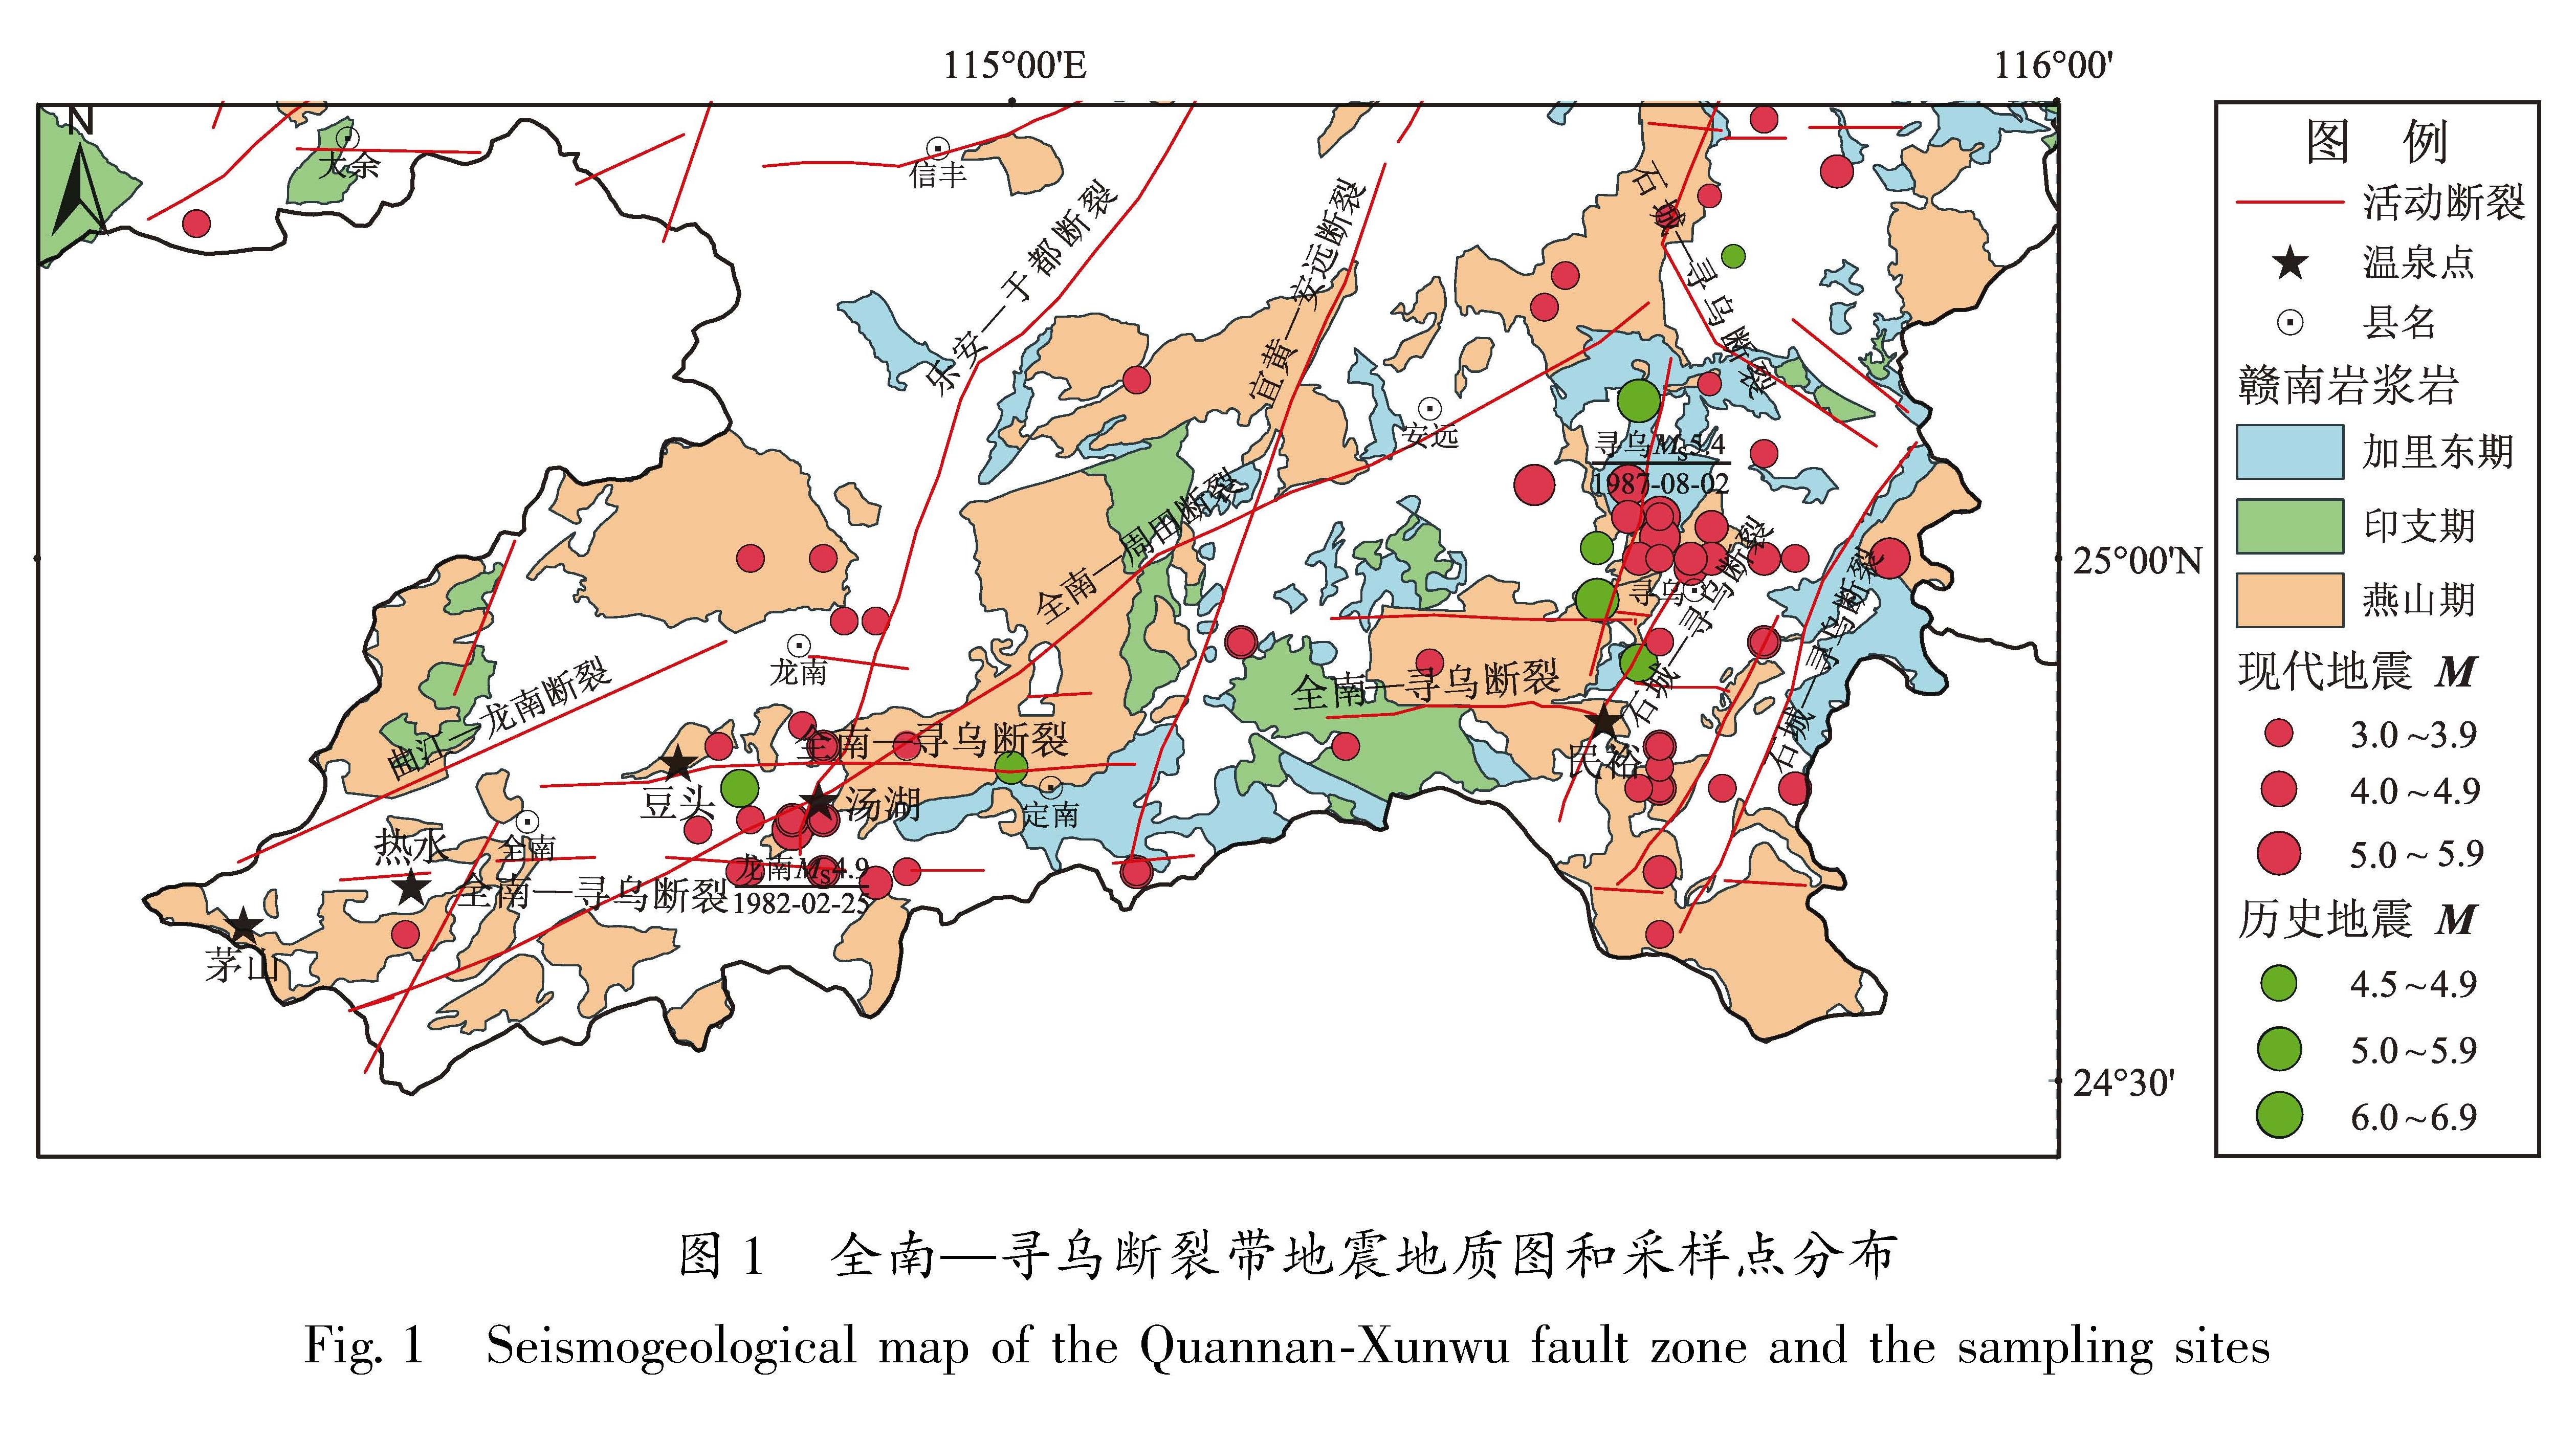 图1 全南—寻乌断裂带地震地质图和采样点分布<br/>Fig.1 Seismogeological map of the Quannan-Xunwu fault zone and the sampling sites